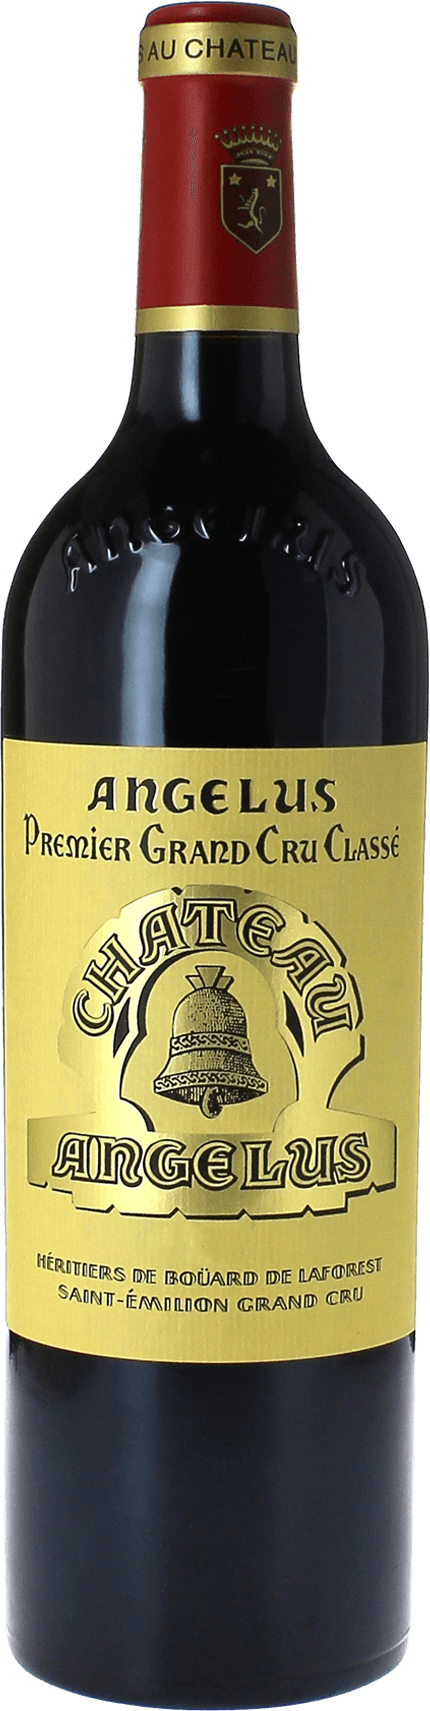 Angelus 2015 1er Grand cru class A Saint-Emilion, Bordeaux rouge